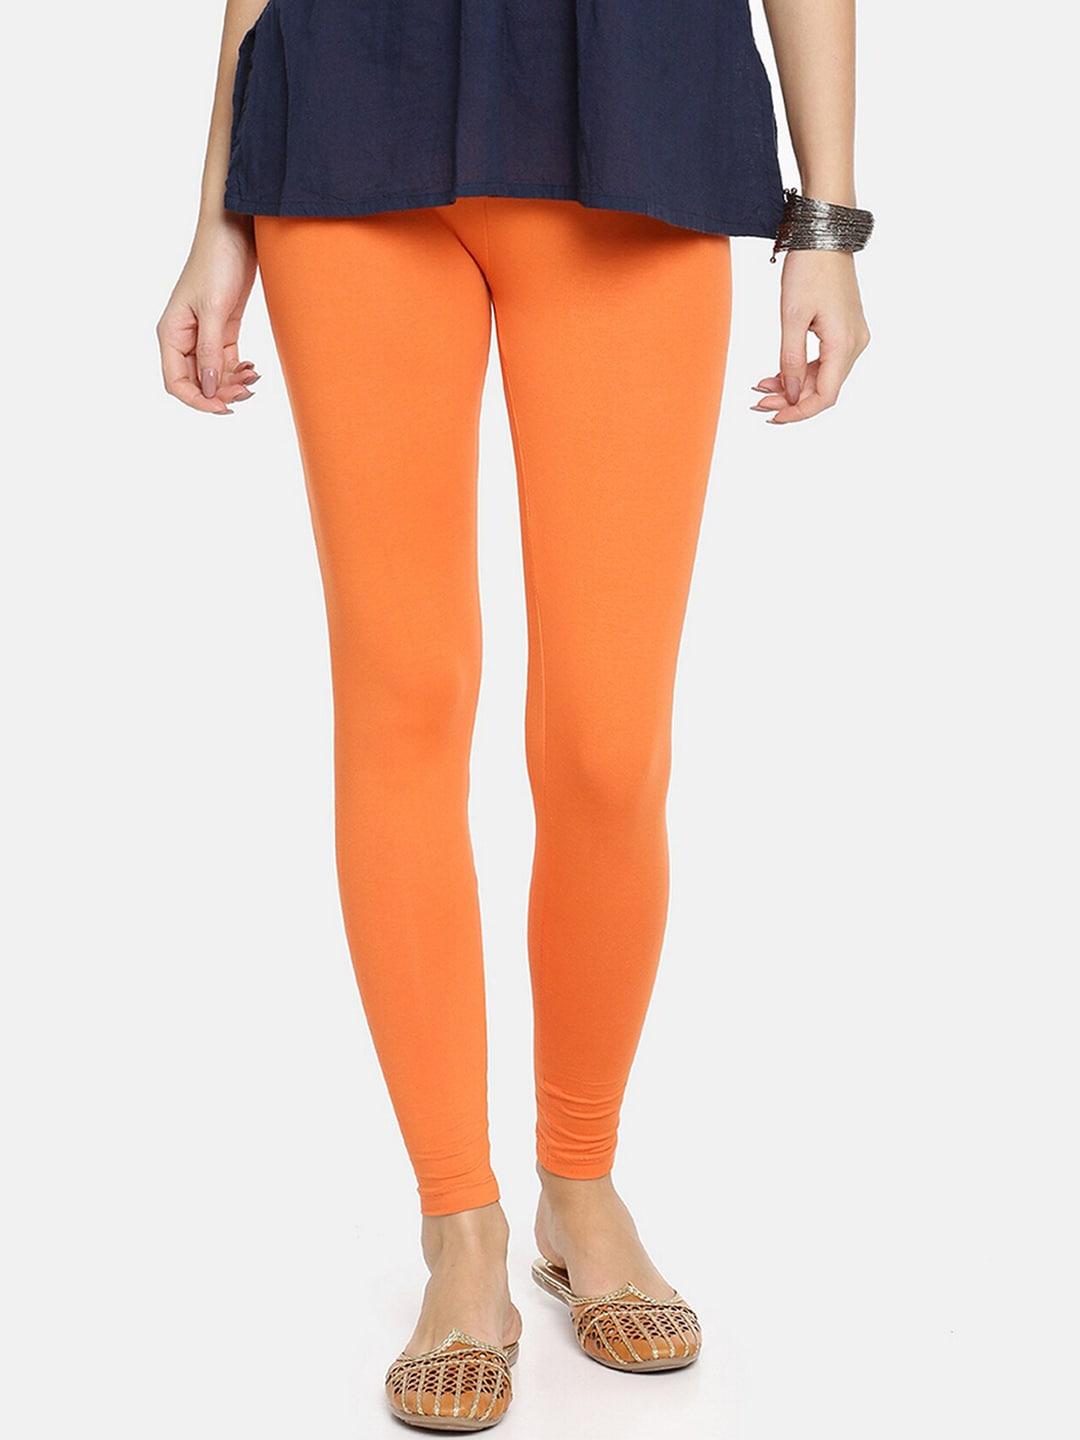 twin birds women orange solid ankle-length leggings